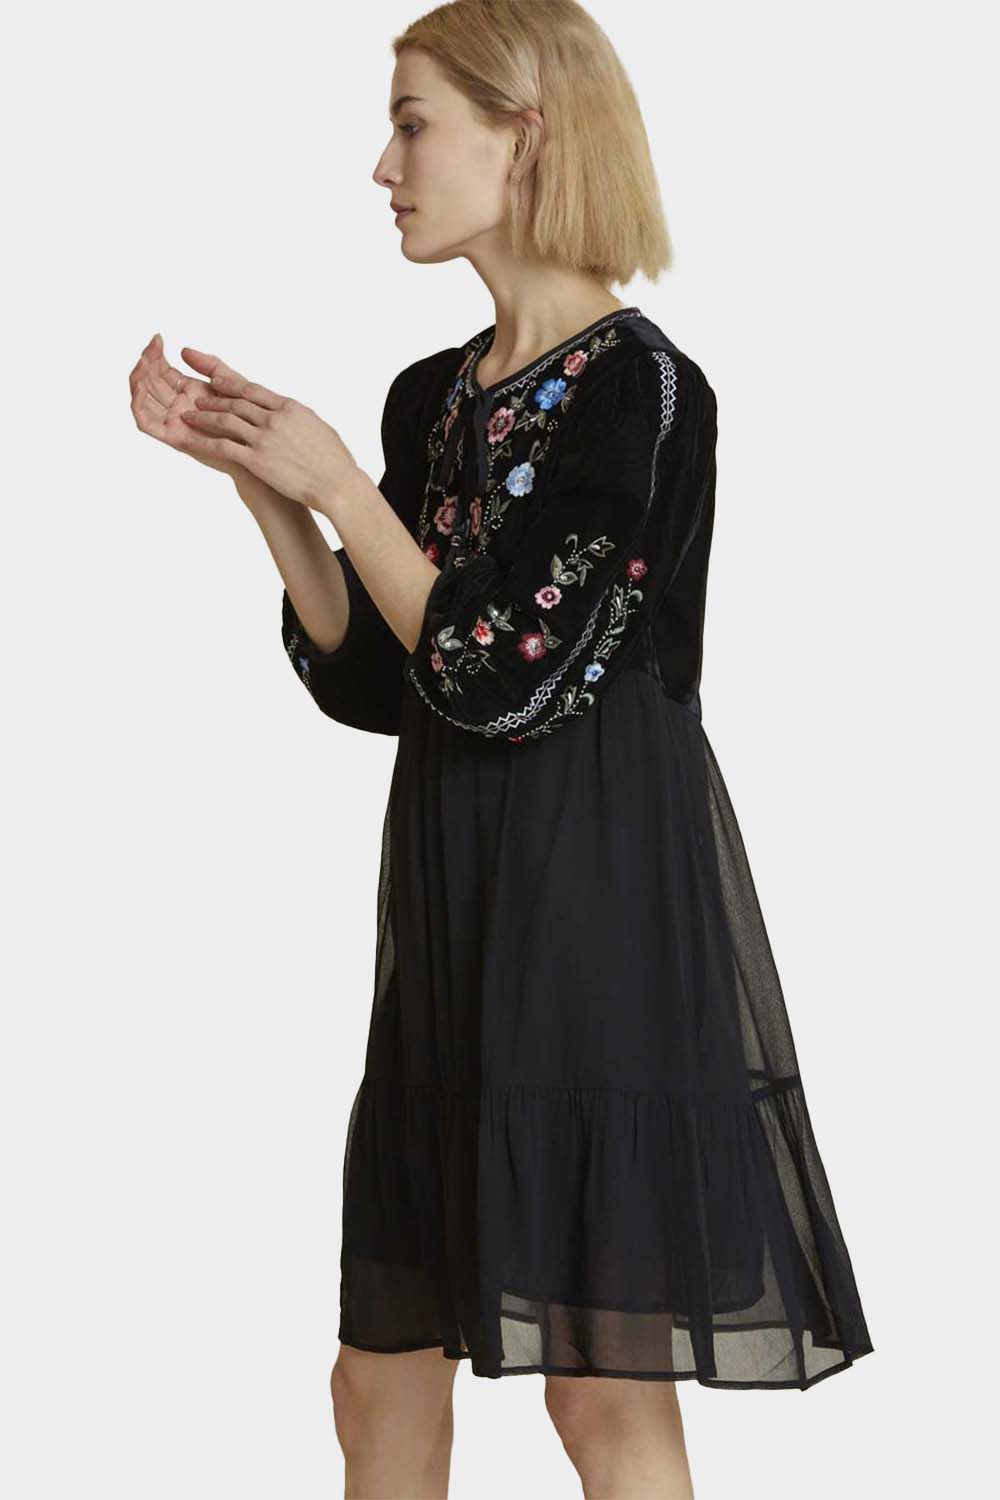 שמלה רקמה מעוטרת לנשים חצאית שתי שכבות RENE DERHY Vendome online | ונדום .